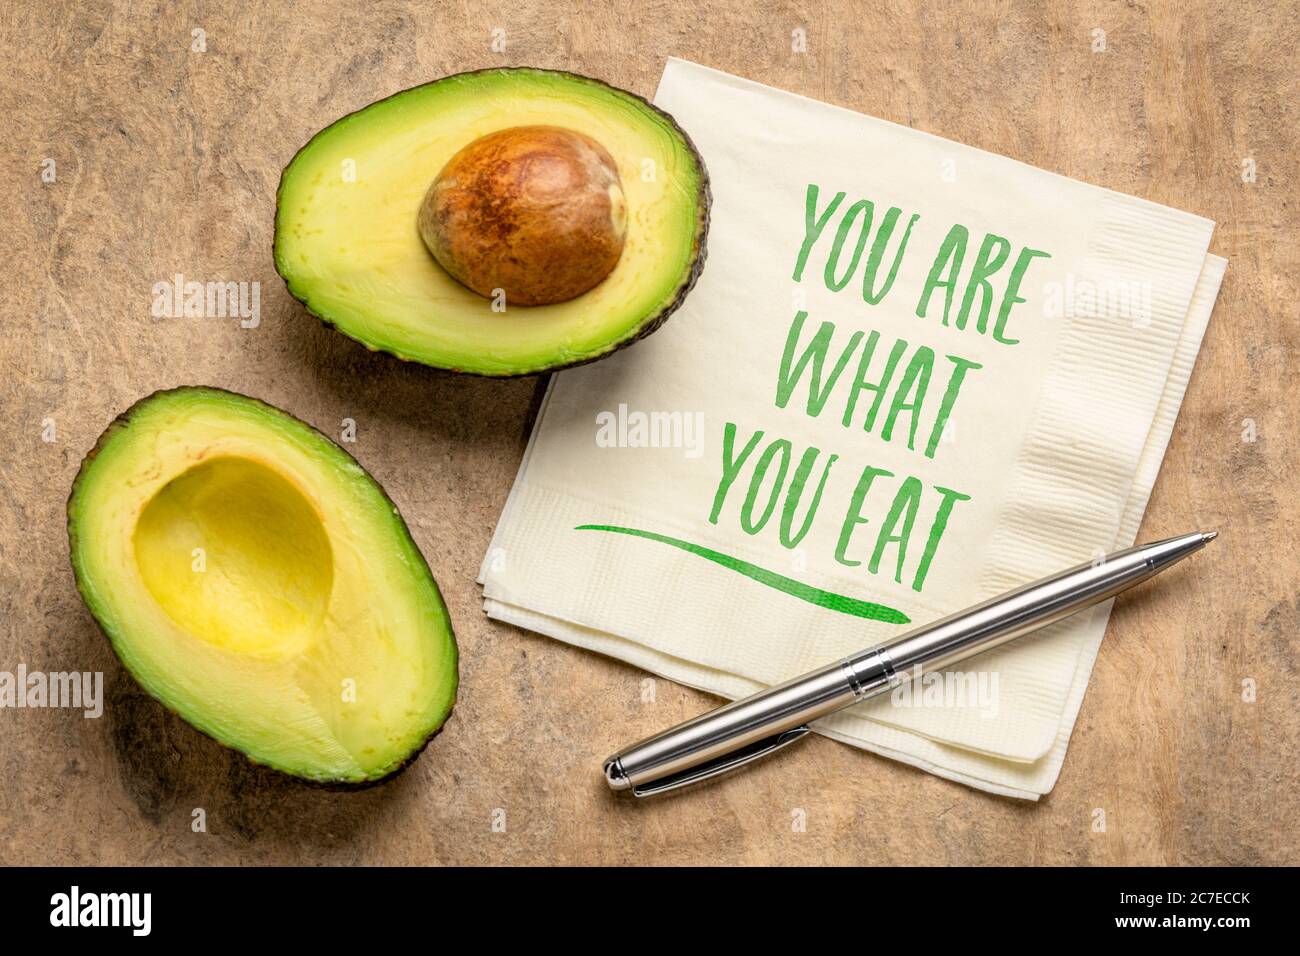 Gesundes Essen und Lifestyle-Konzept - Sie sind, was zu essen Erinnerungsworte handgeschrieben auf einer Serviette mit geschnittenen Avocado Frucht Stockfoto